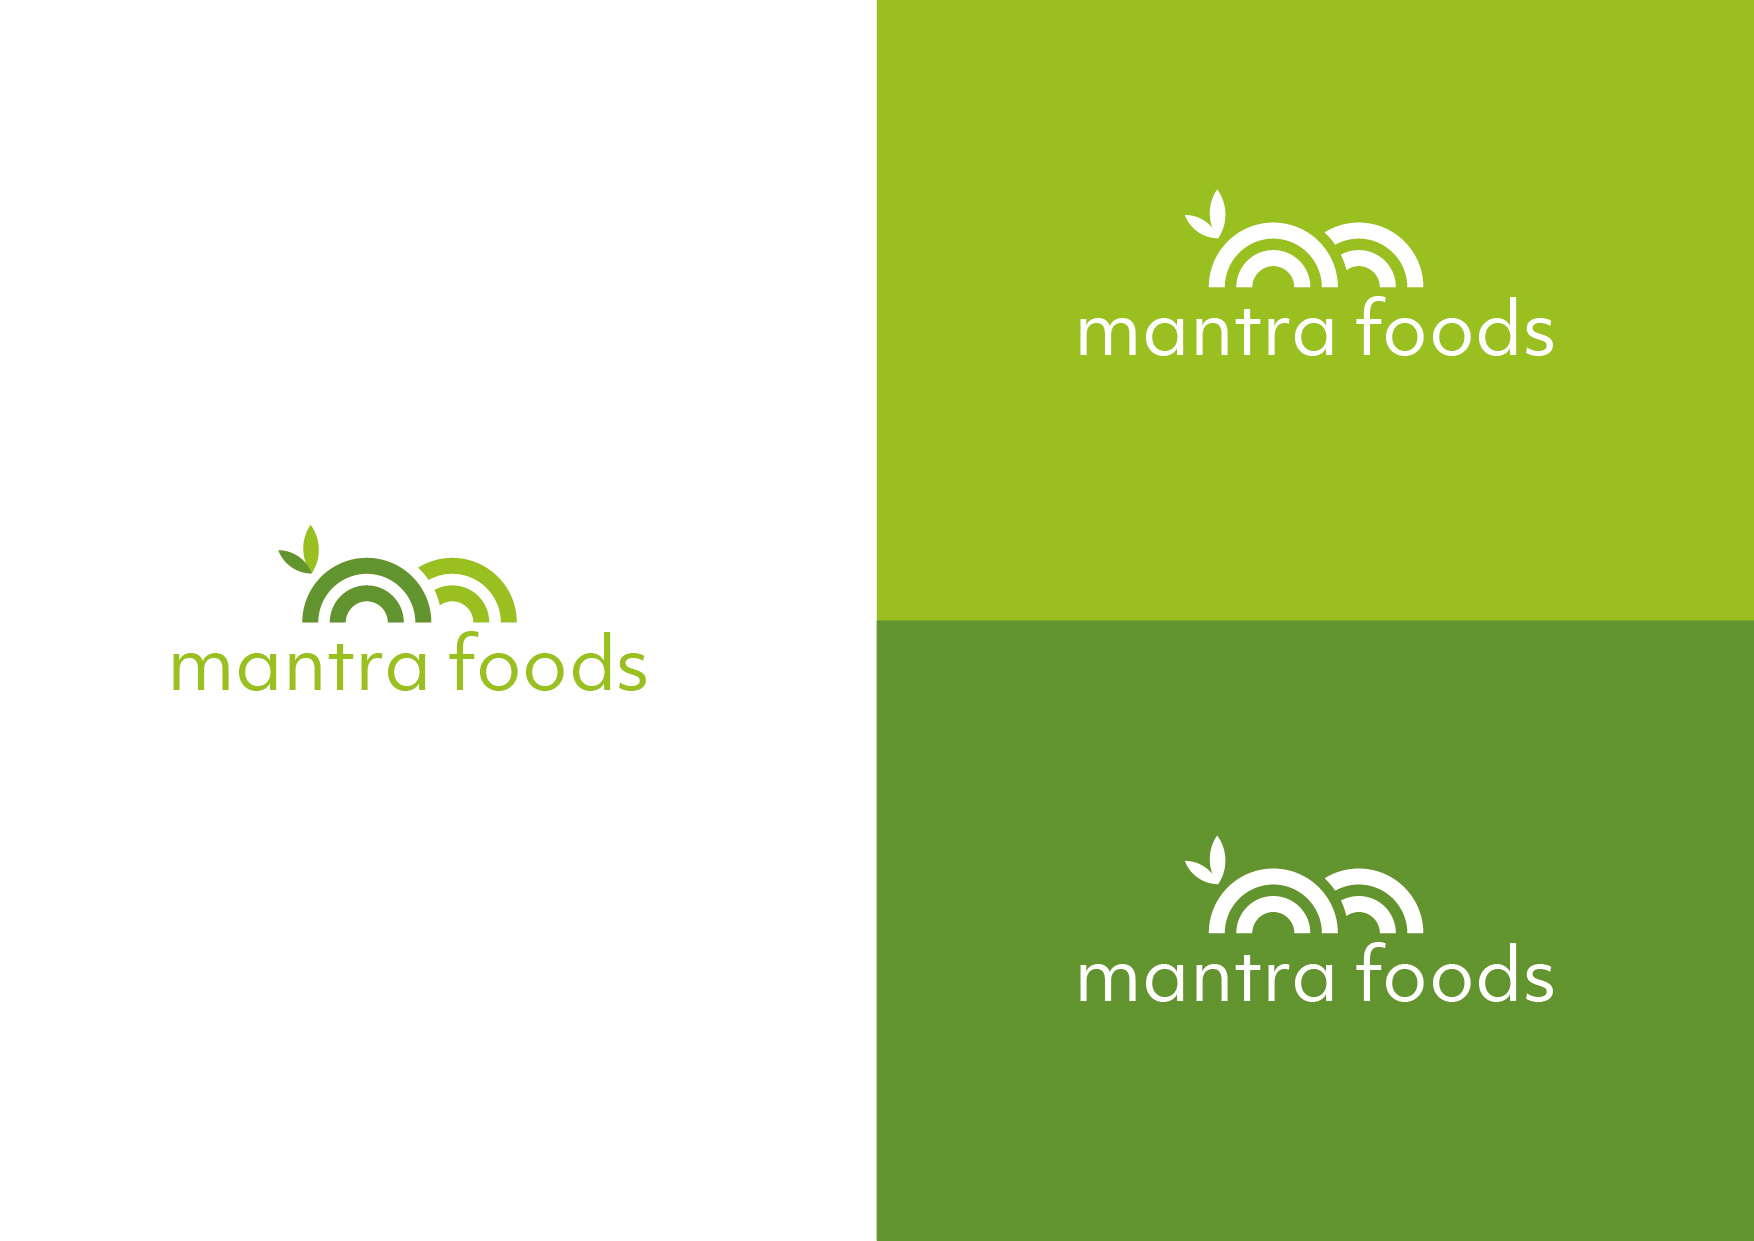 mantra foods logo colours